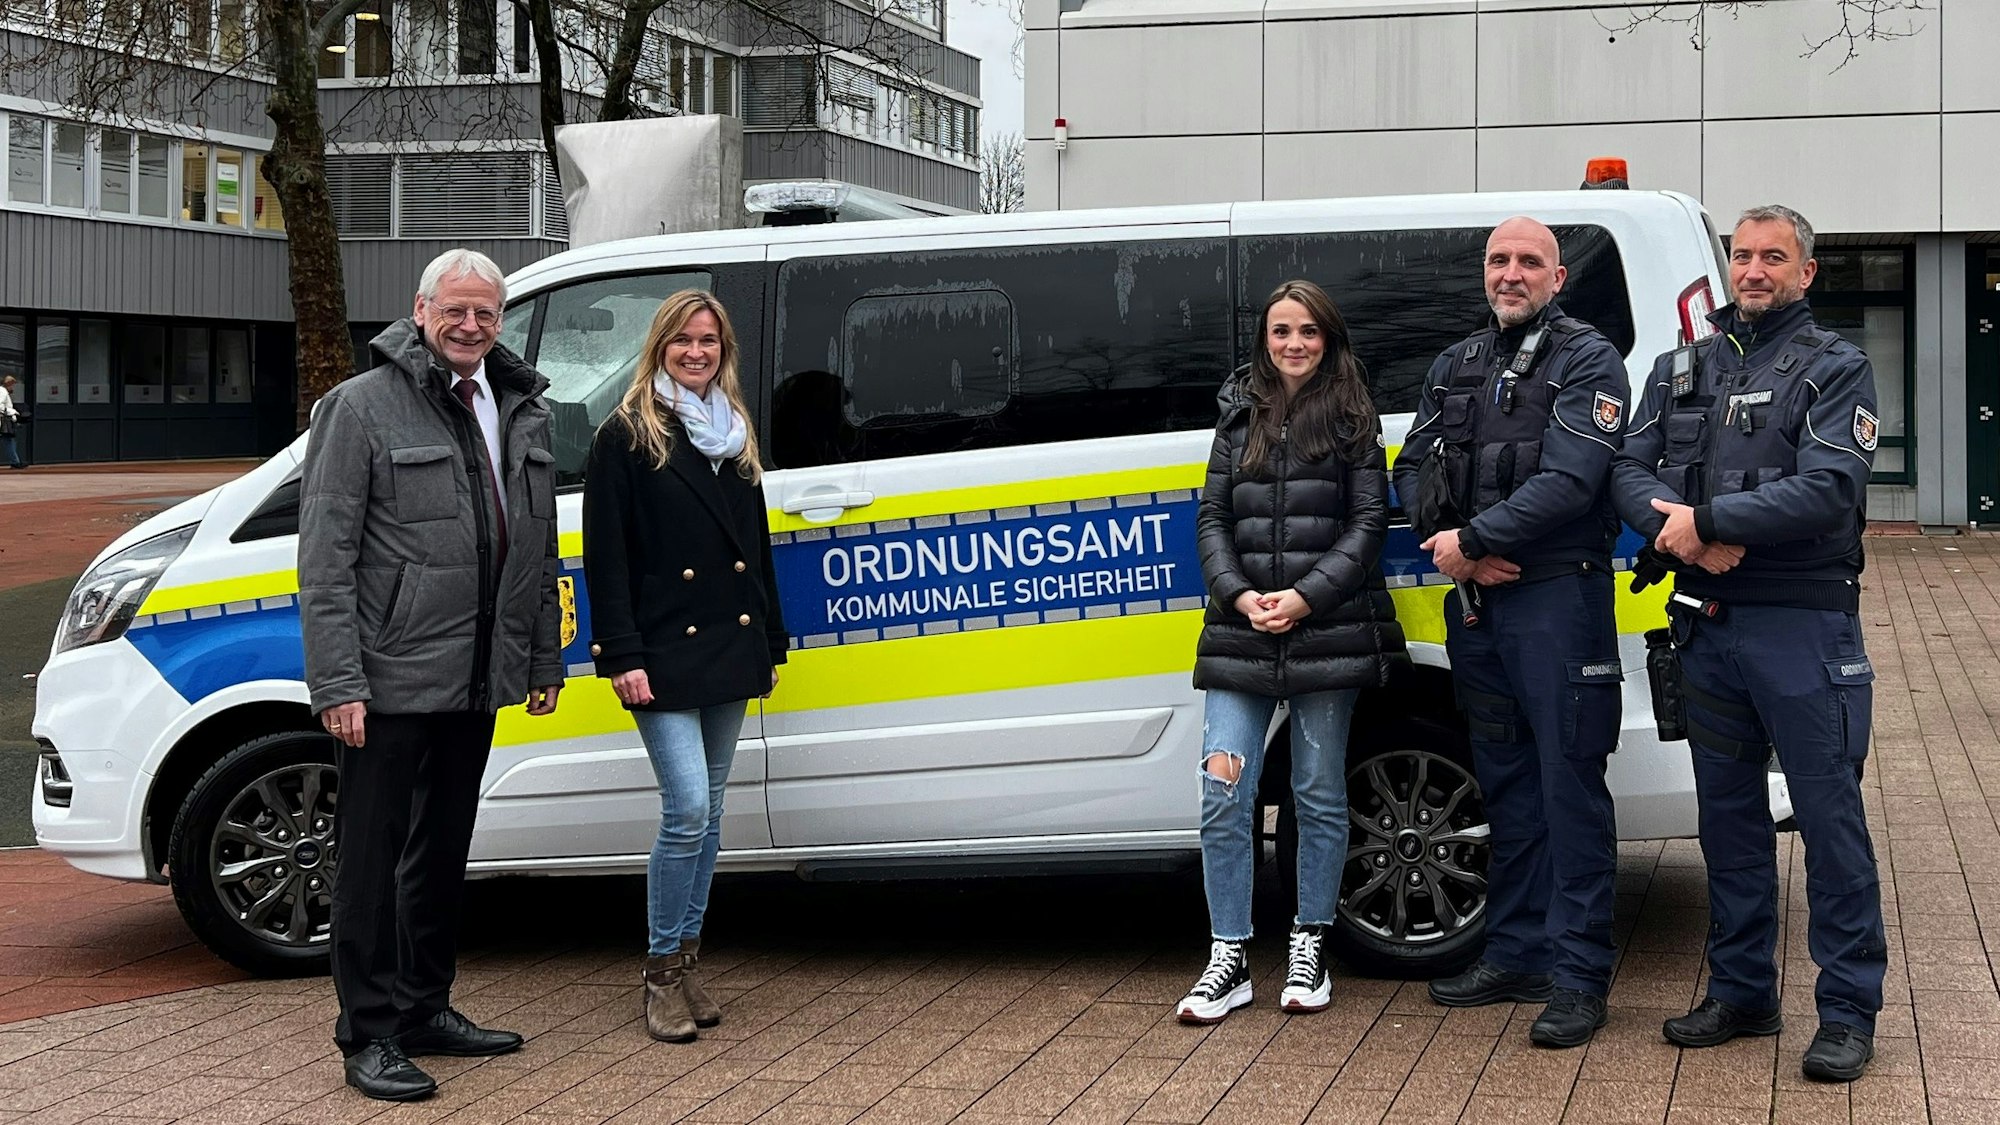 Zu sehen ist der Wagen des Brühler Ordnungsdienstes (BOD) sowie Bürgermeister Dieter Freytag und einige Mitarbeiter des BOD.